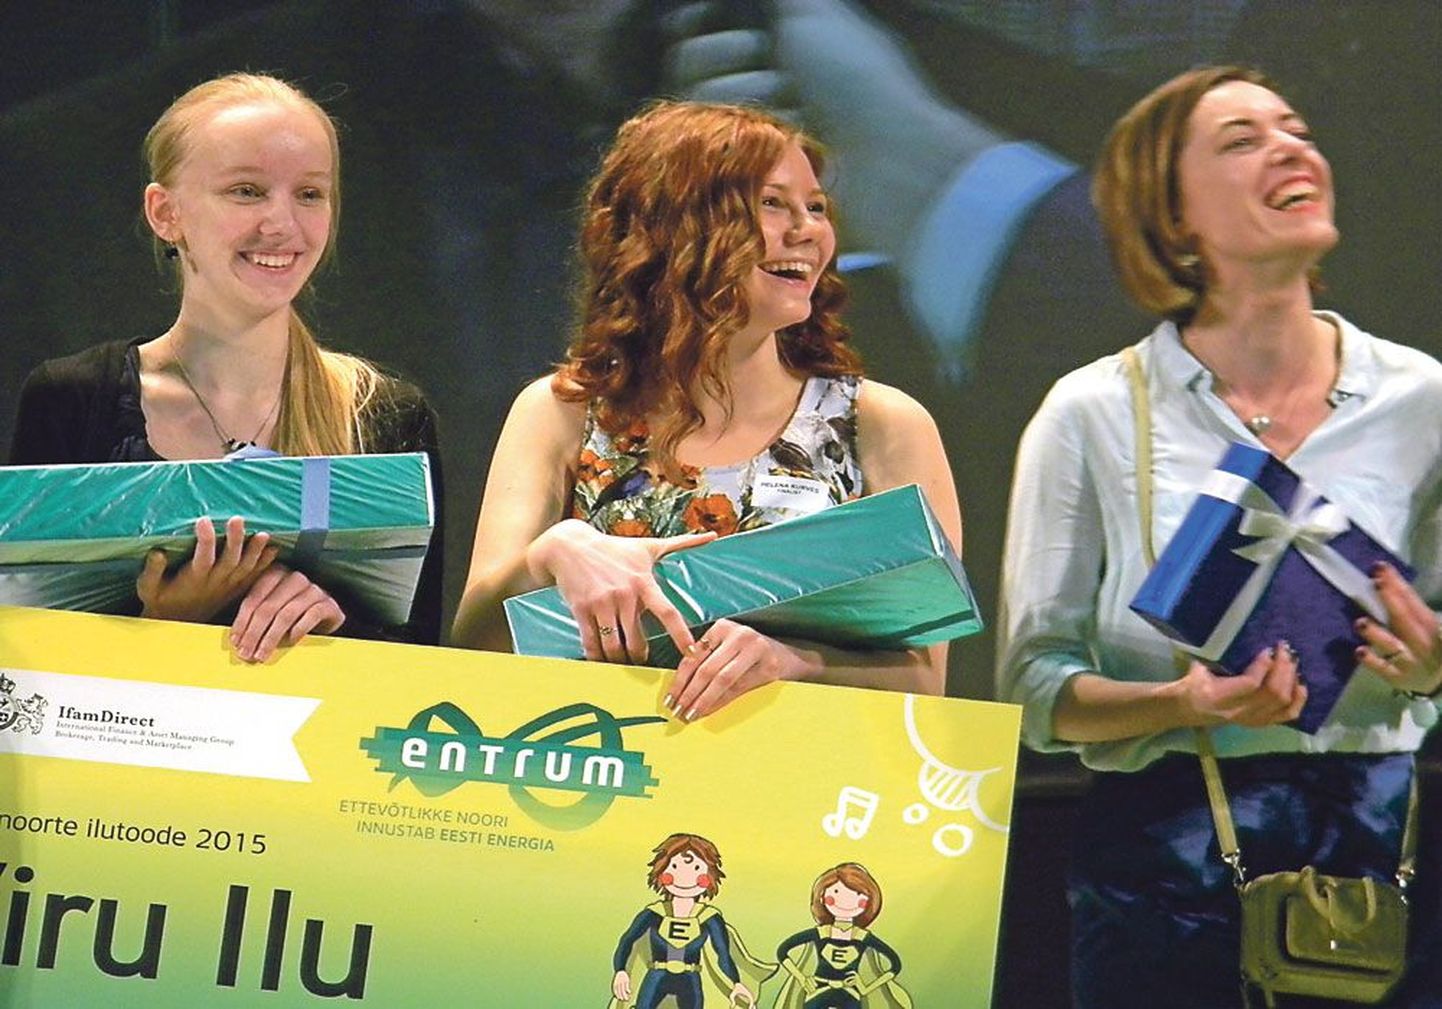 Члены команды Viru Ilu Энола Сандер, Хелена Курвес и их ментор Яна Павленкова. Viru Ilu стала победителем в нескольких номинациях конкурса ENTRUM, в том числе в главной – «Самые предприимчивые школьники Эстонии».